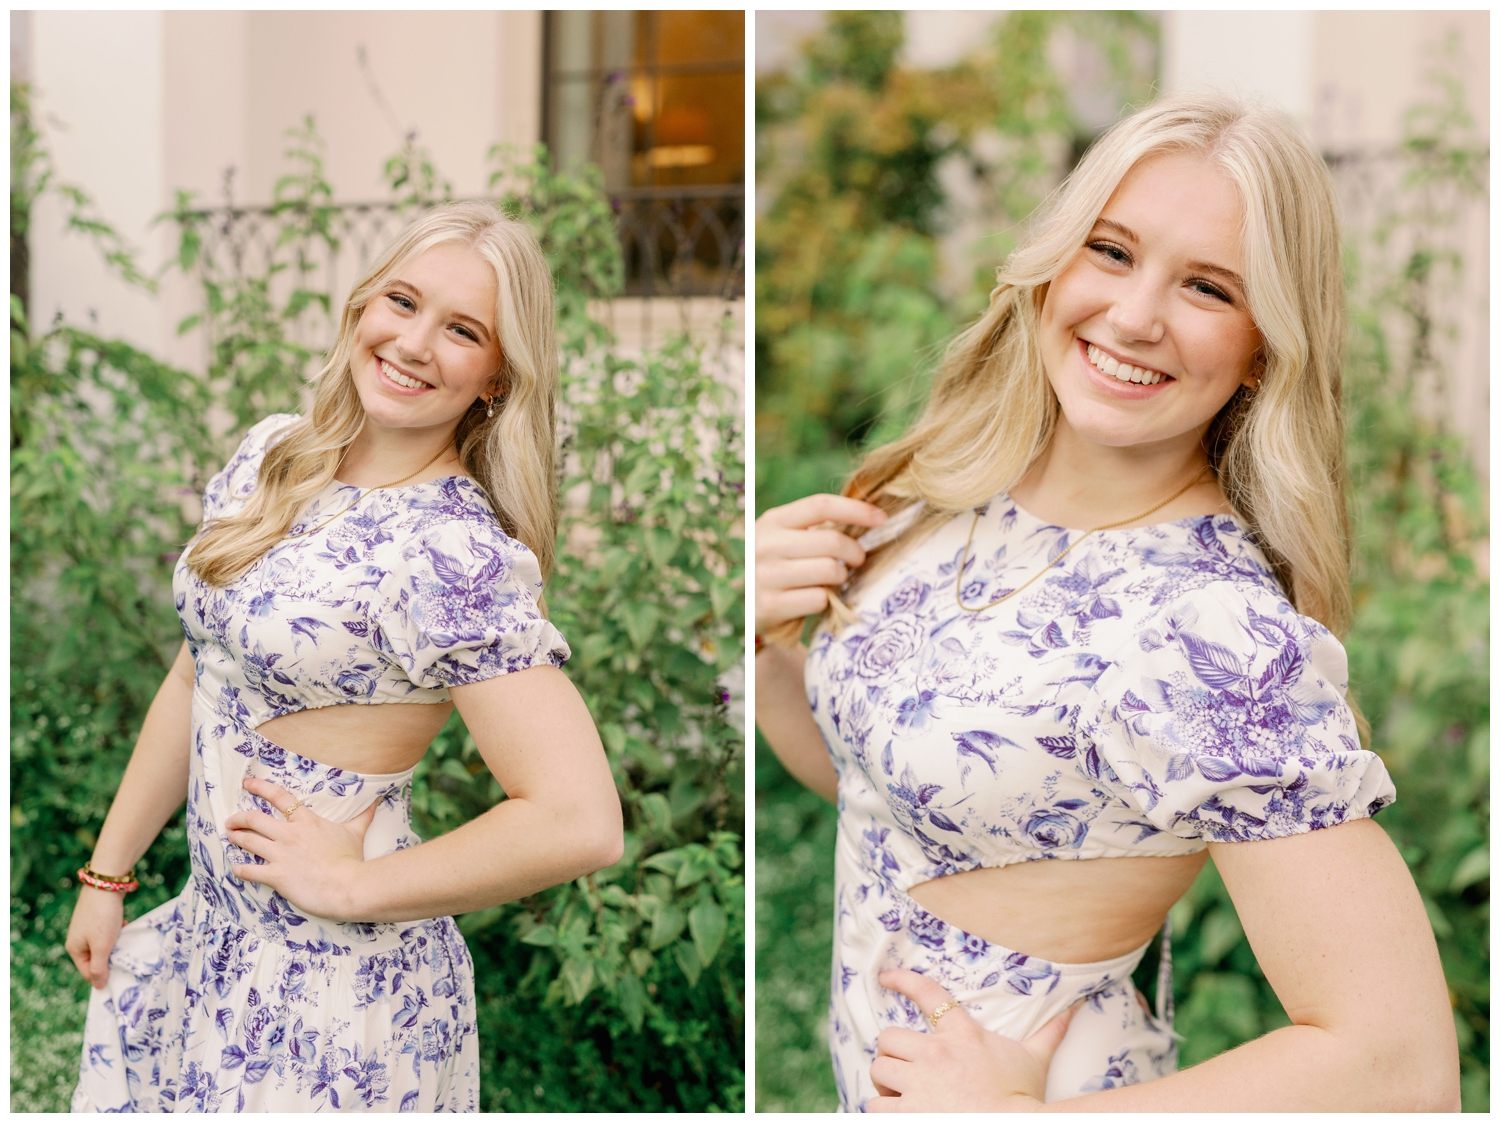 senior girl in white and blue floral dress outdoors smiling for Senior Spokesmodel Team Houston